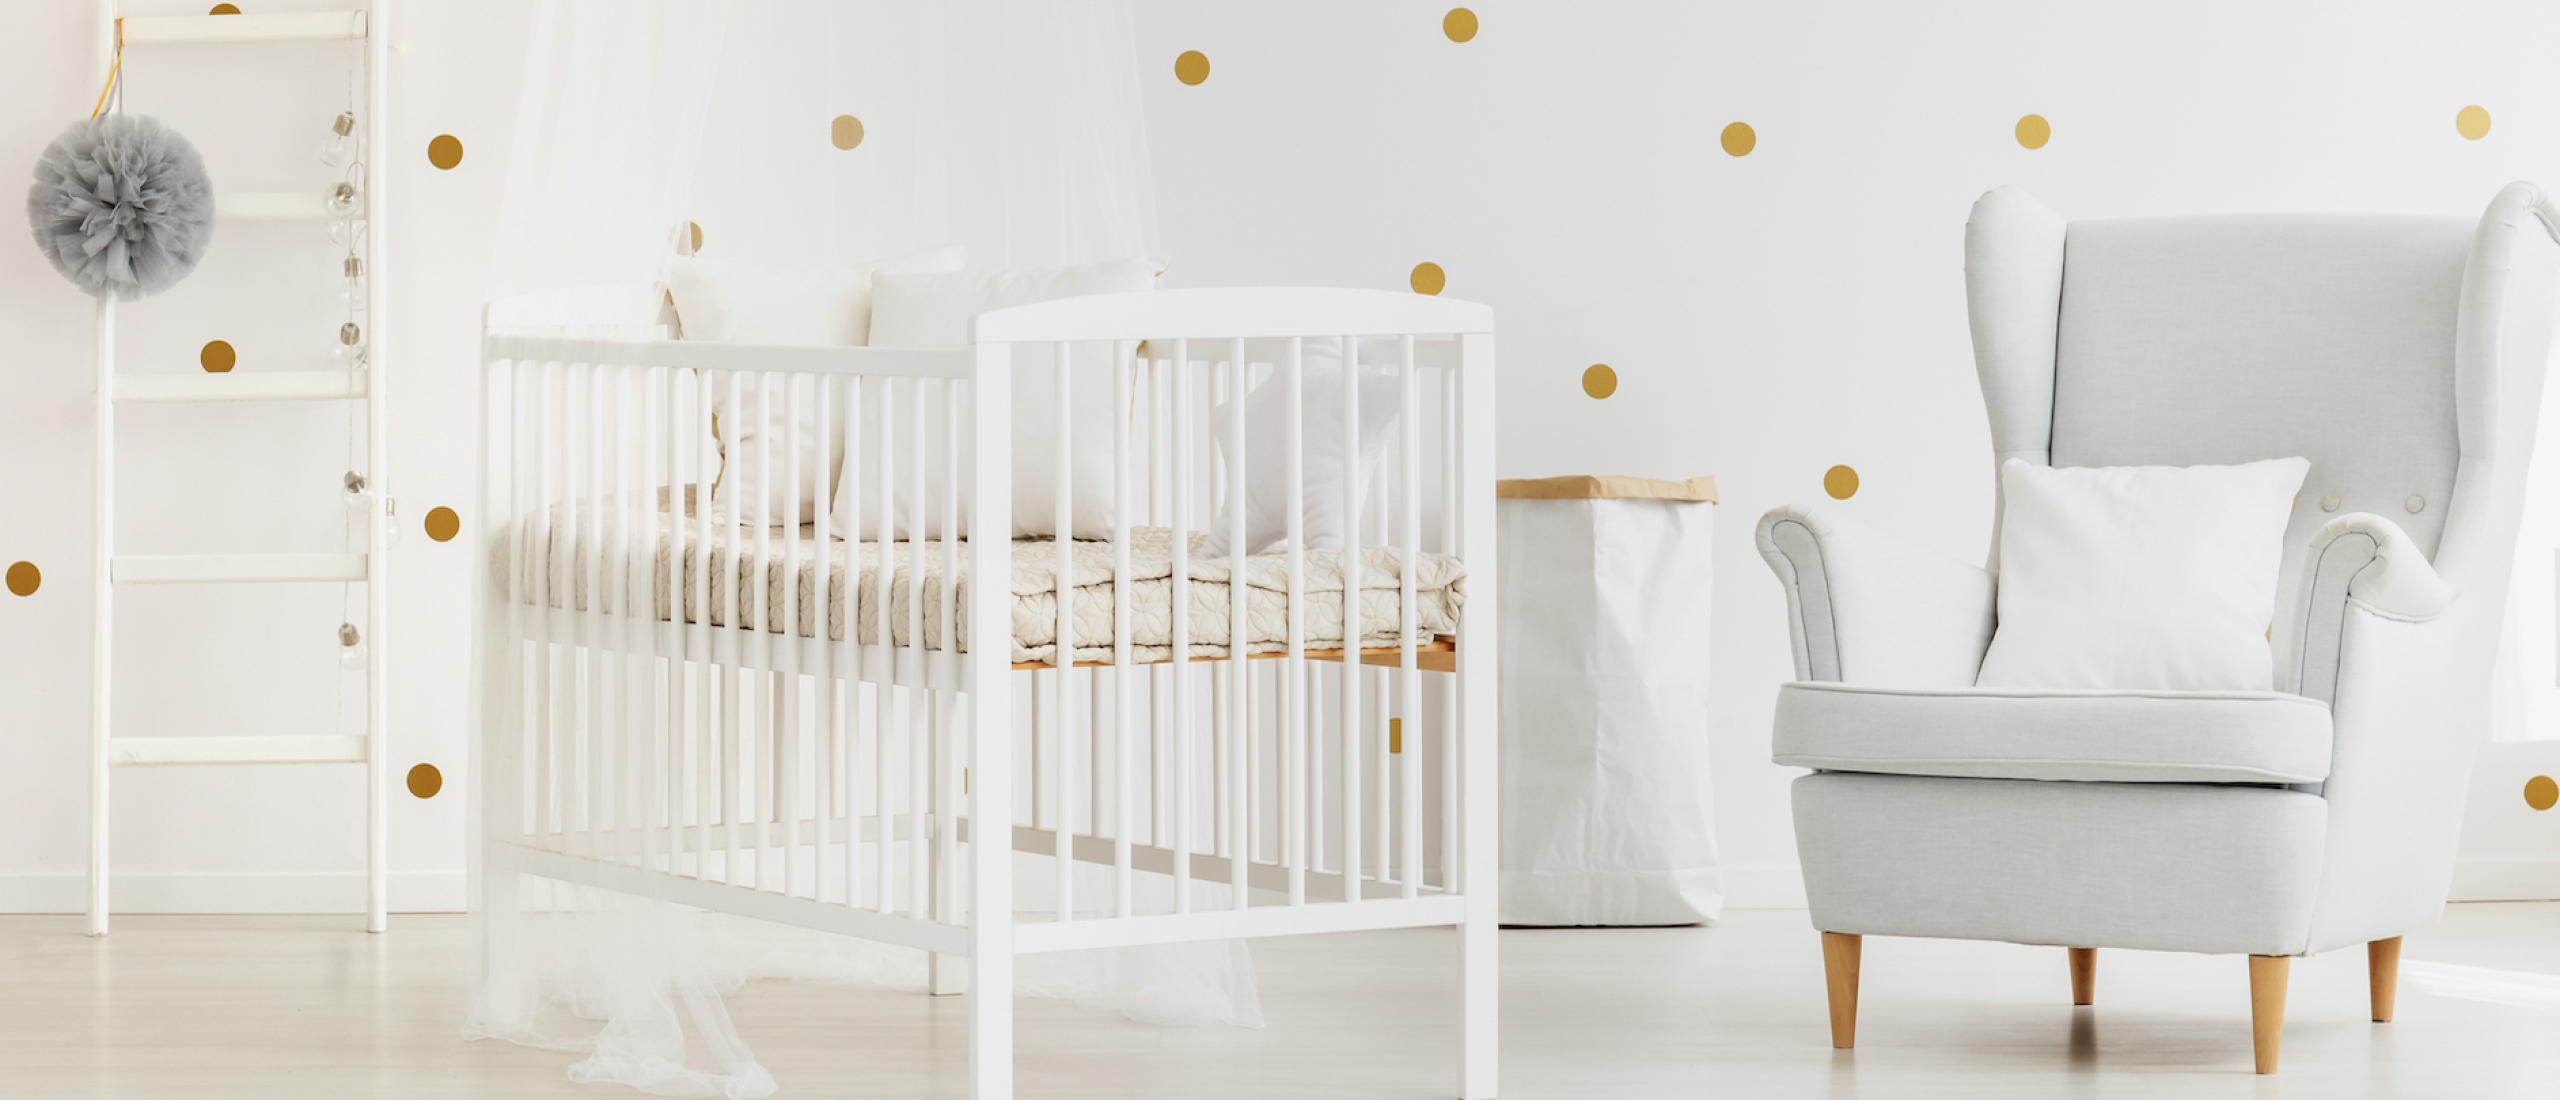 Hoe creëer je een originele en eigen babykamer?